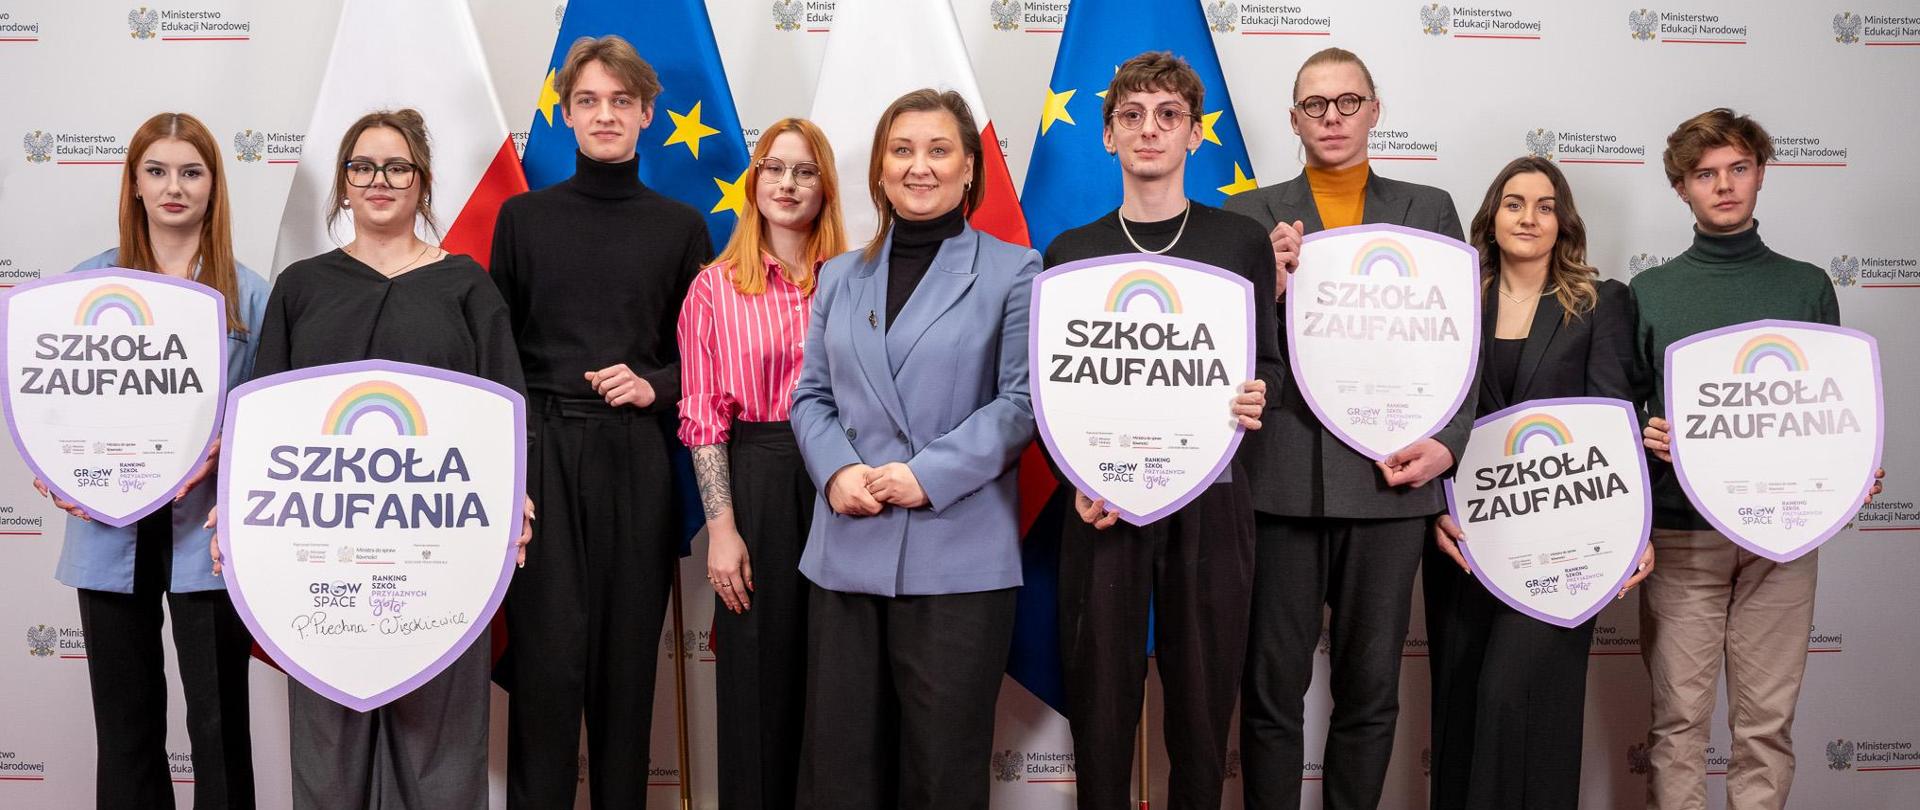 Na tle białej ścianki z napisem Ministerstwo Edukacji Narodowej stoi wiceminister Paulina Piechna-Więckiewicz, obok niej grupa młodych ludzi, którzy trzymają w rękach duże tarcze z napisem Szkoła zaufania. W tle flagi Polski i UE.